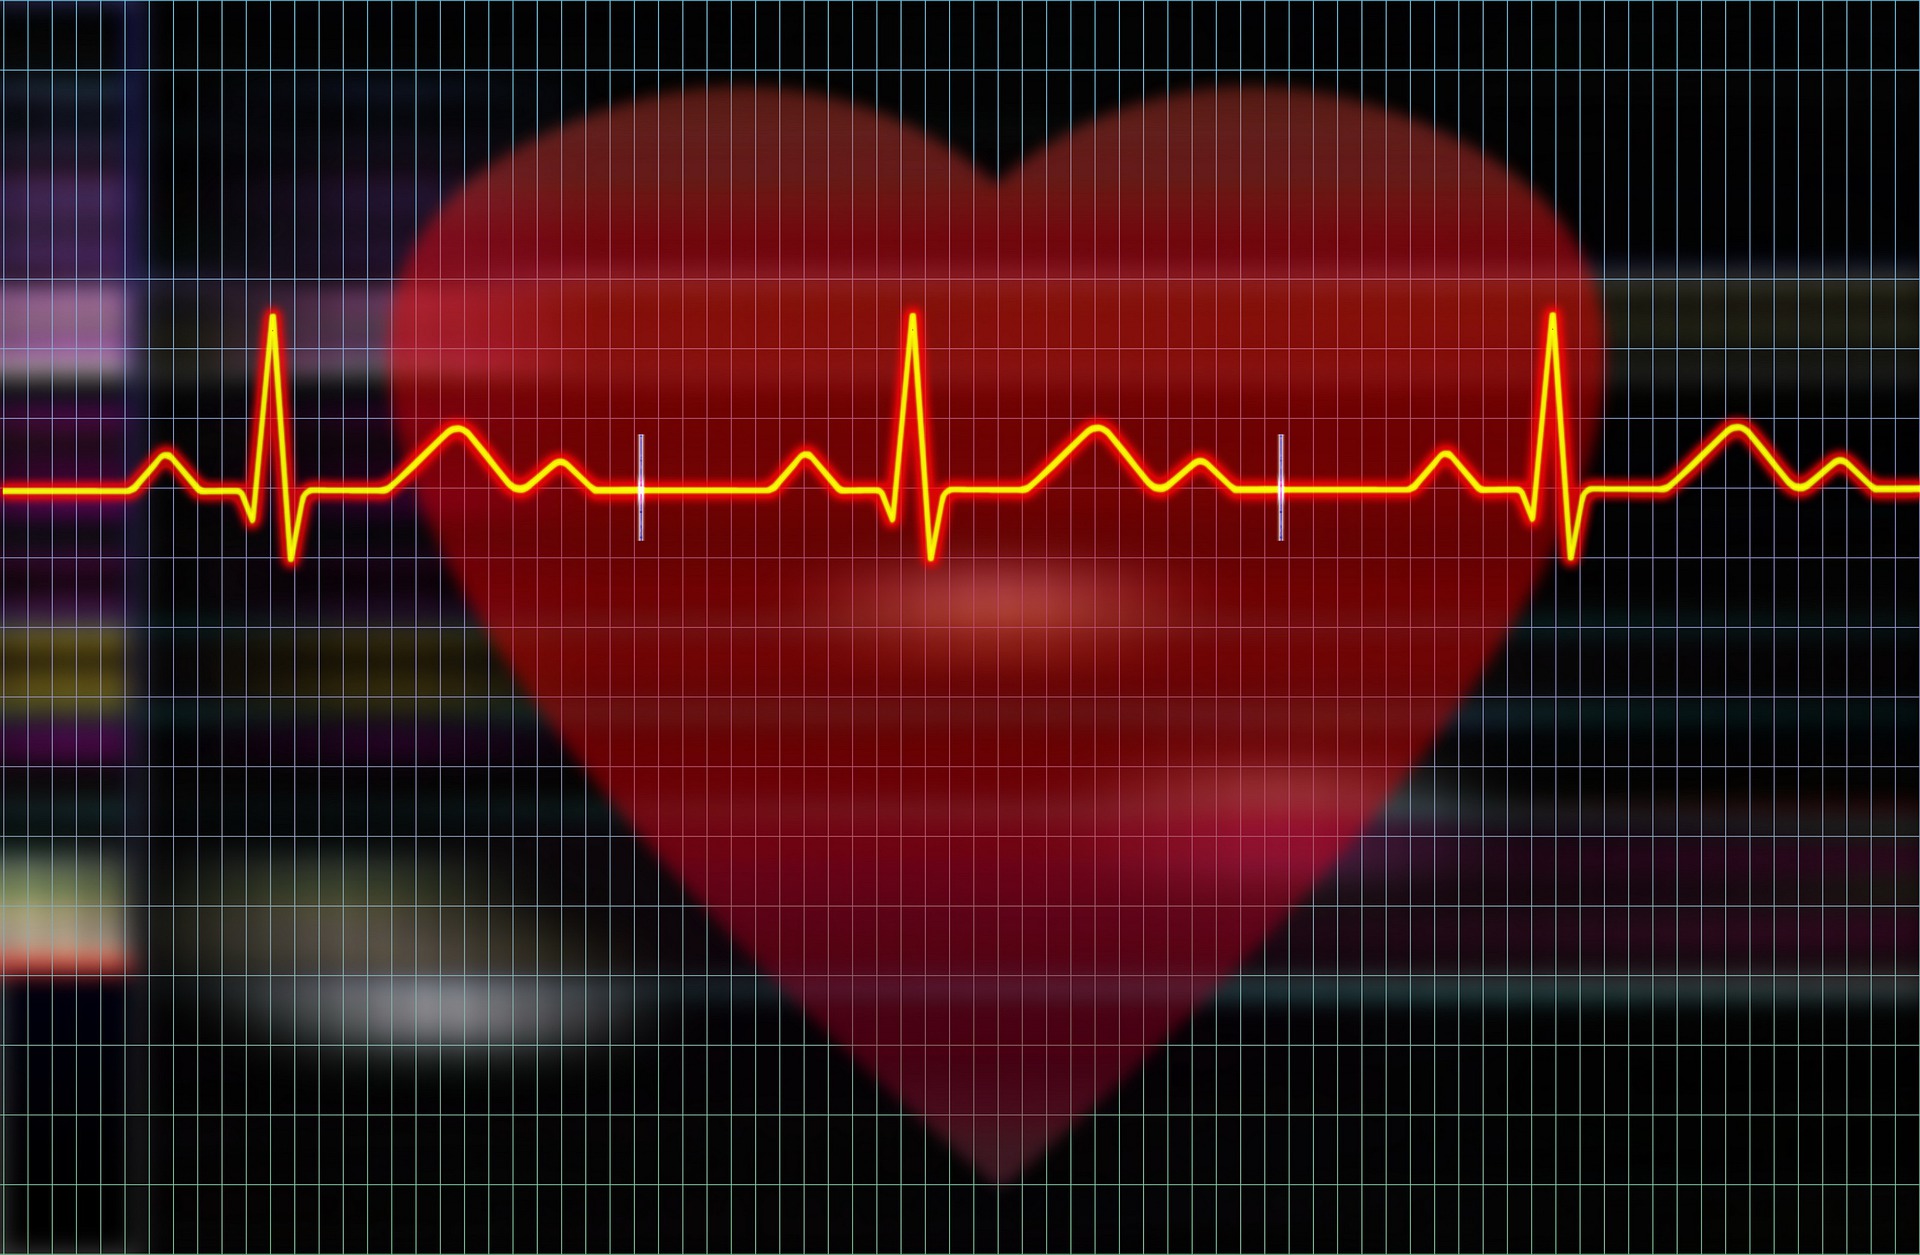 Co po zawale serca? Profilaktyczne monitorowanie serca holterem EKG.